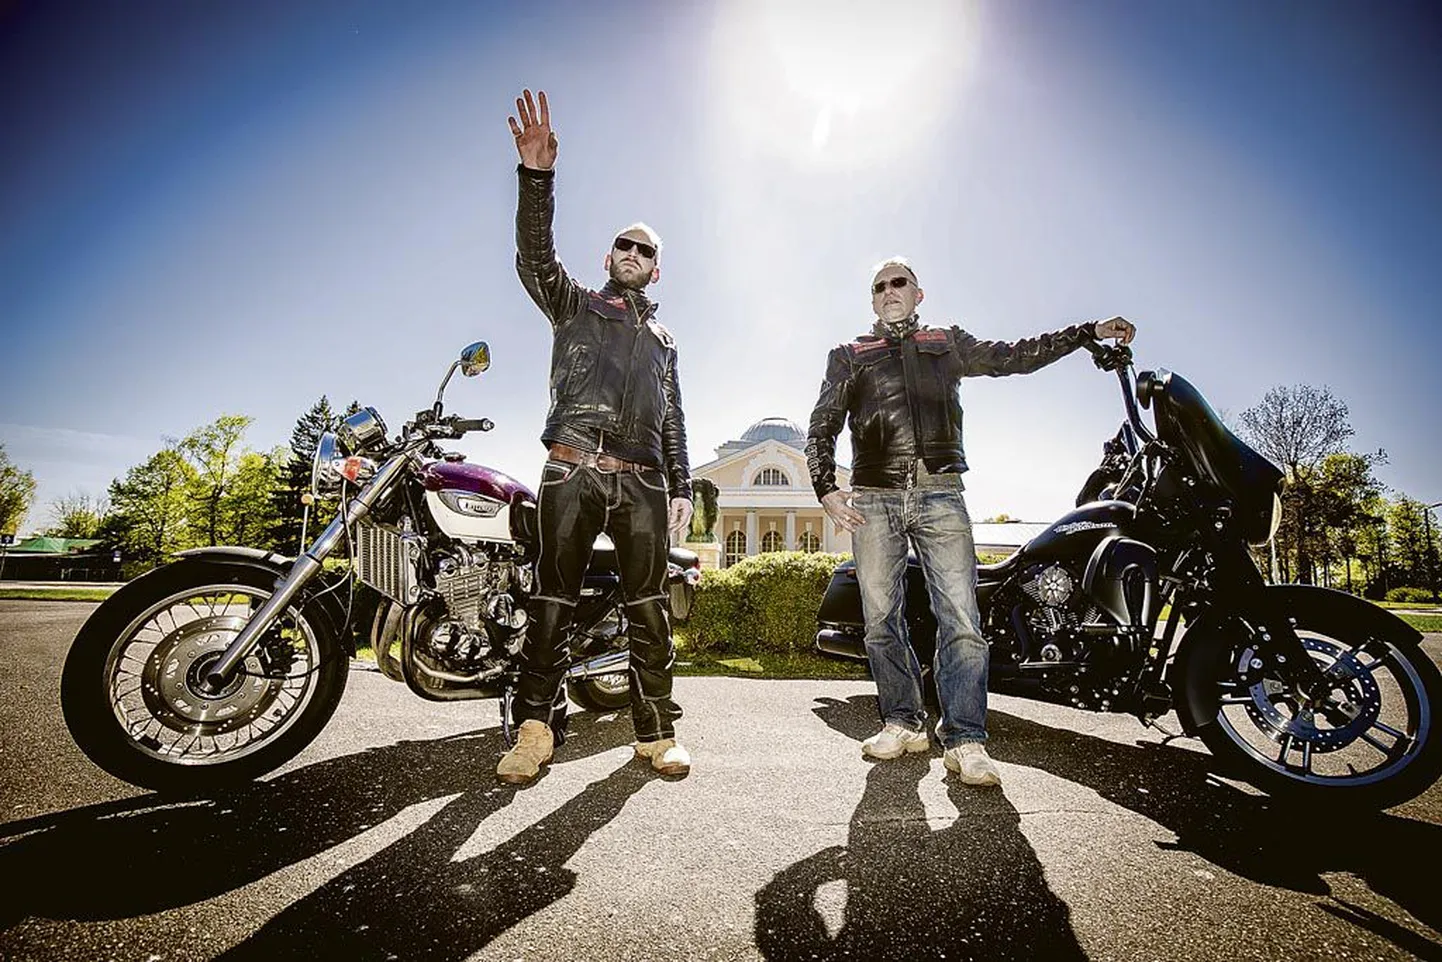 Wildcardsi motoklubi mehed Ranto Lupp (vasakul) ja Gunnar Soone on viimastel aastatel kõvasti vaeva näinud, et motohooaja avapidustused oleksid huvitavad kõigile uudistajatele.